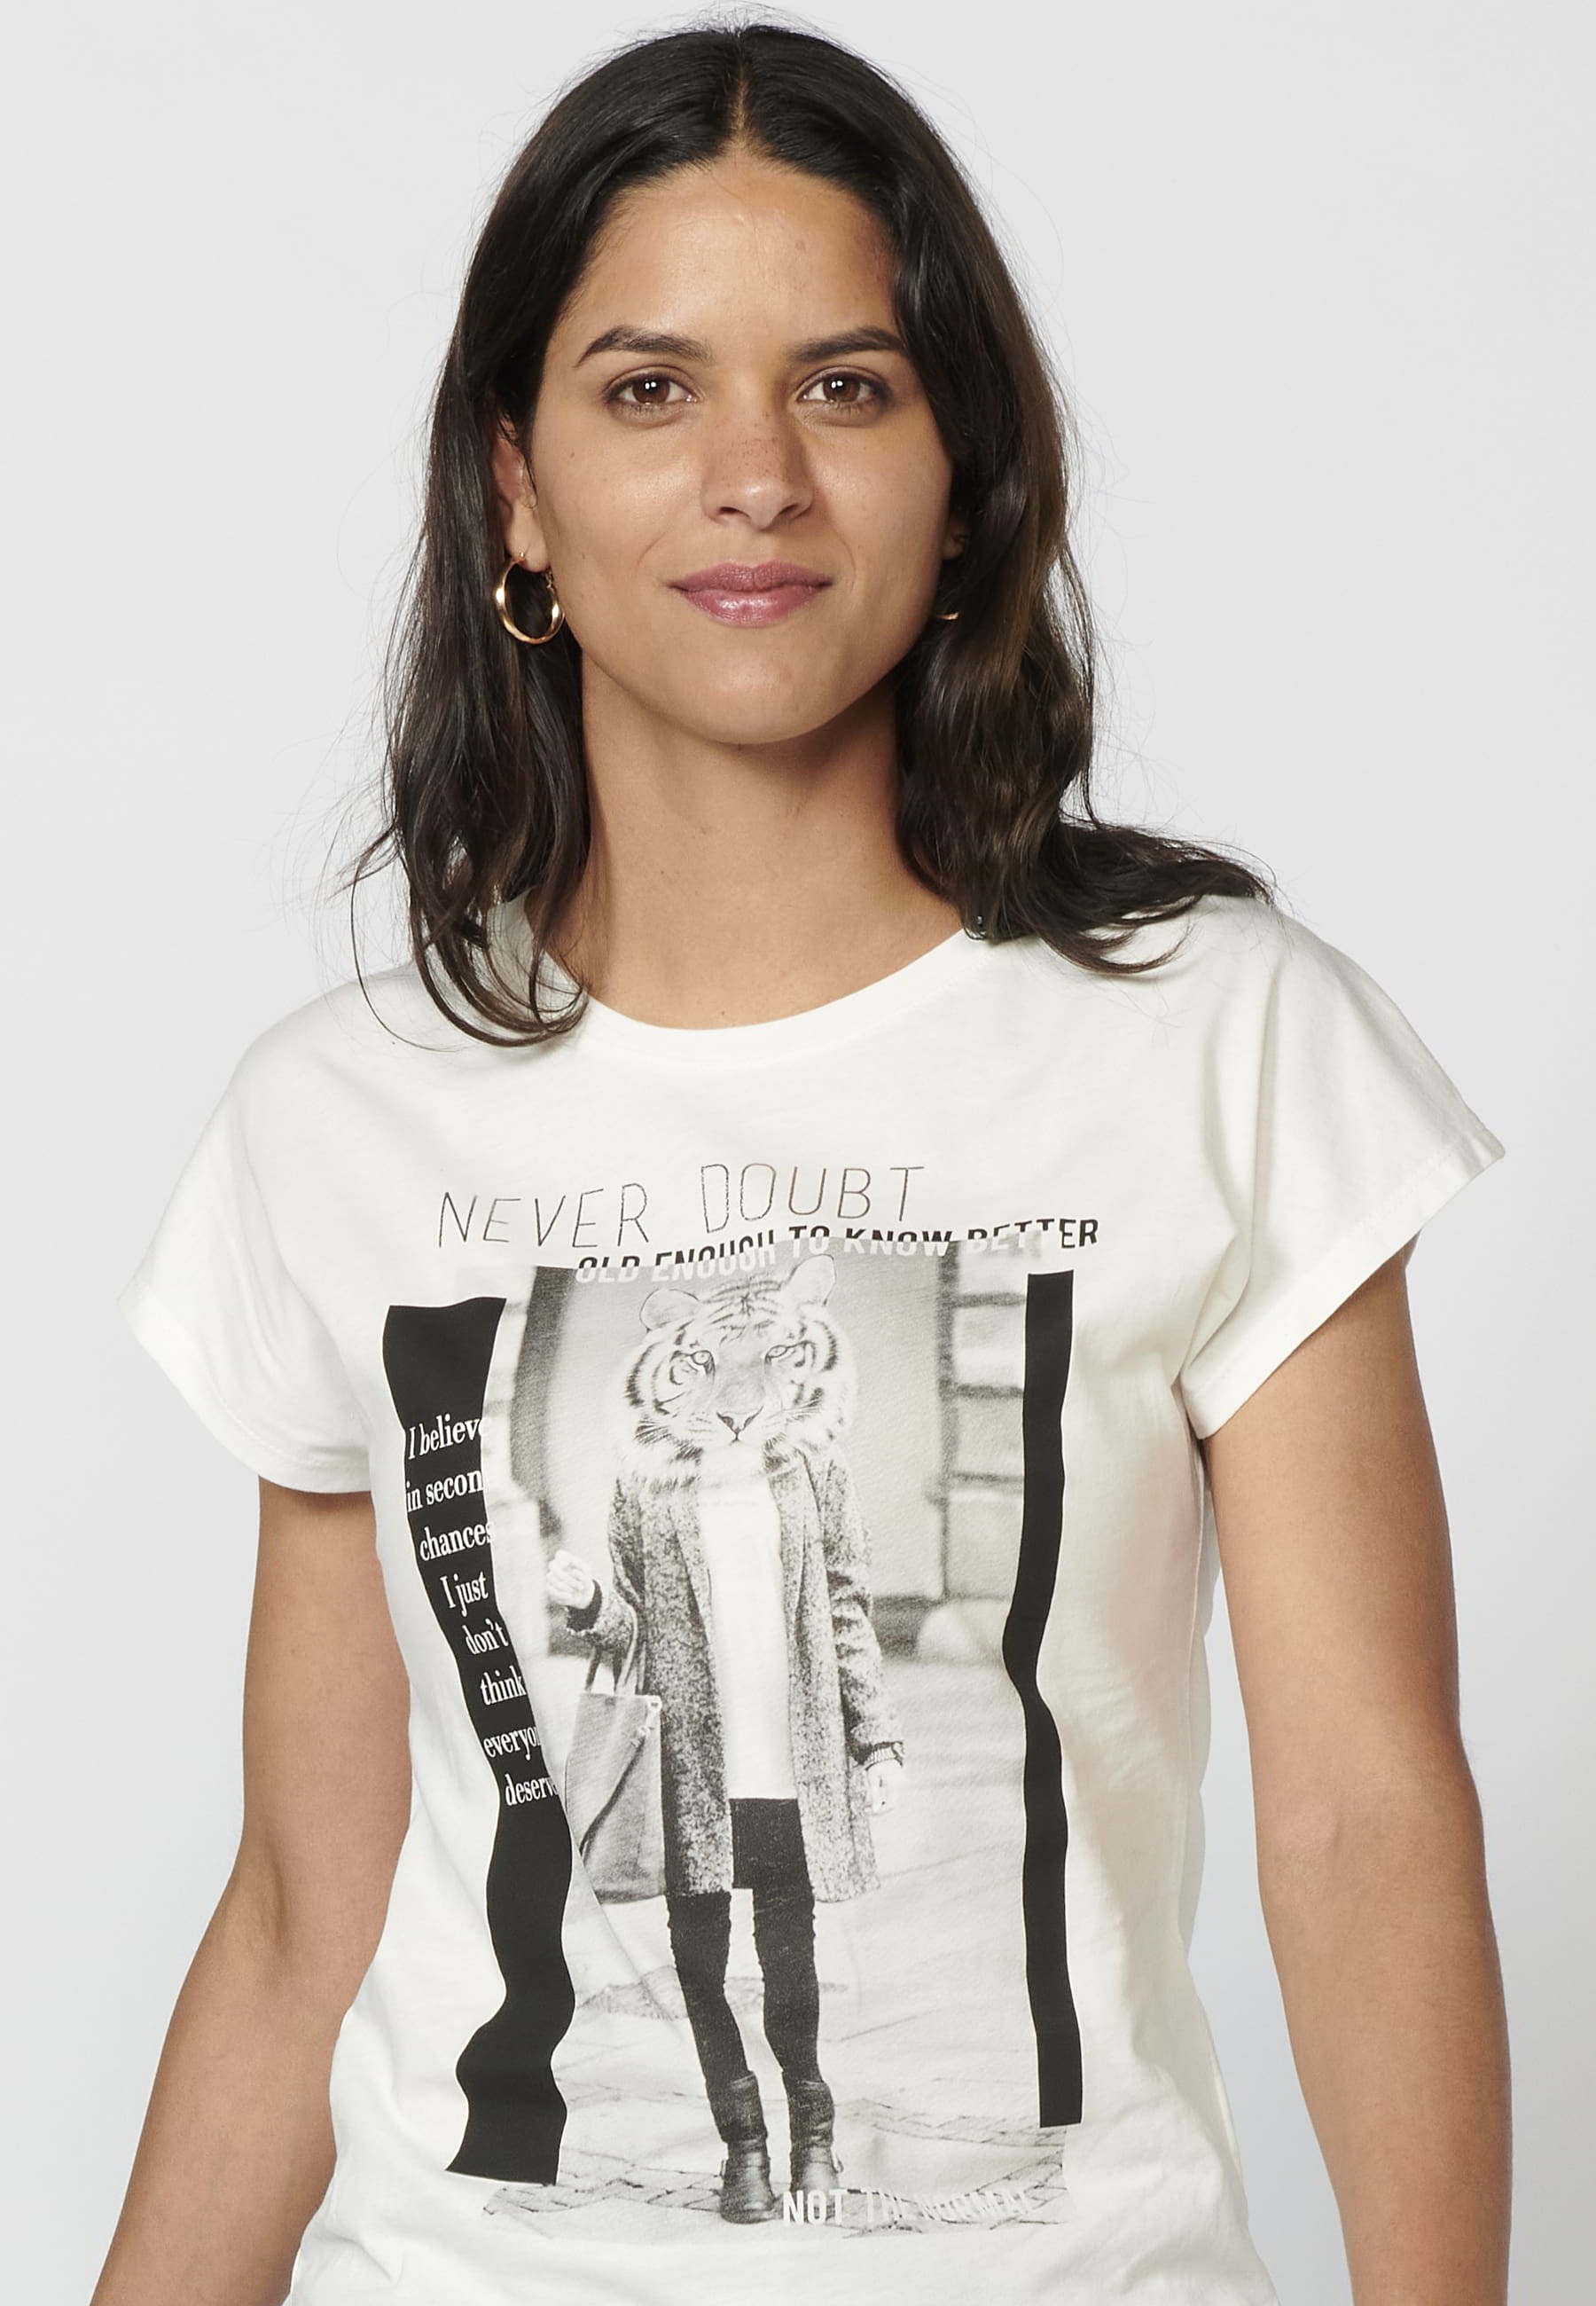 Camiseta top de manga corta de Algodón cuello redondo y estampado delantero color Blanco para Mujer